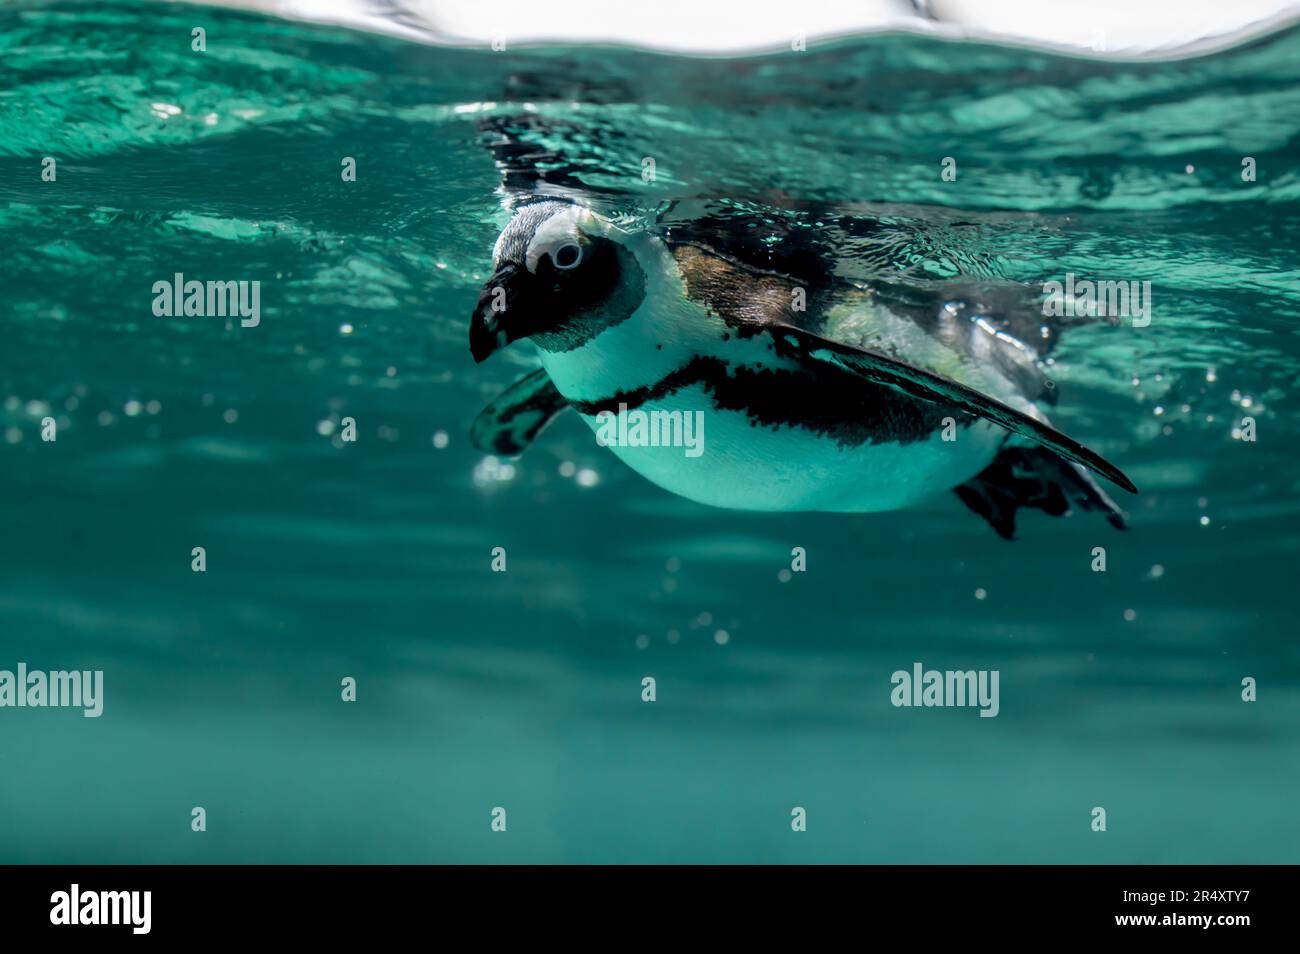 Pinguino nuotare in acqua con bolle. Pinguino africano. Spheniscus demersus. Pinguino del Capo o pinguino sudafricano. Spazio di copia. Foto Stock